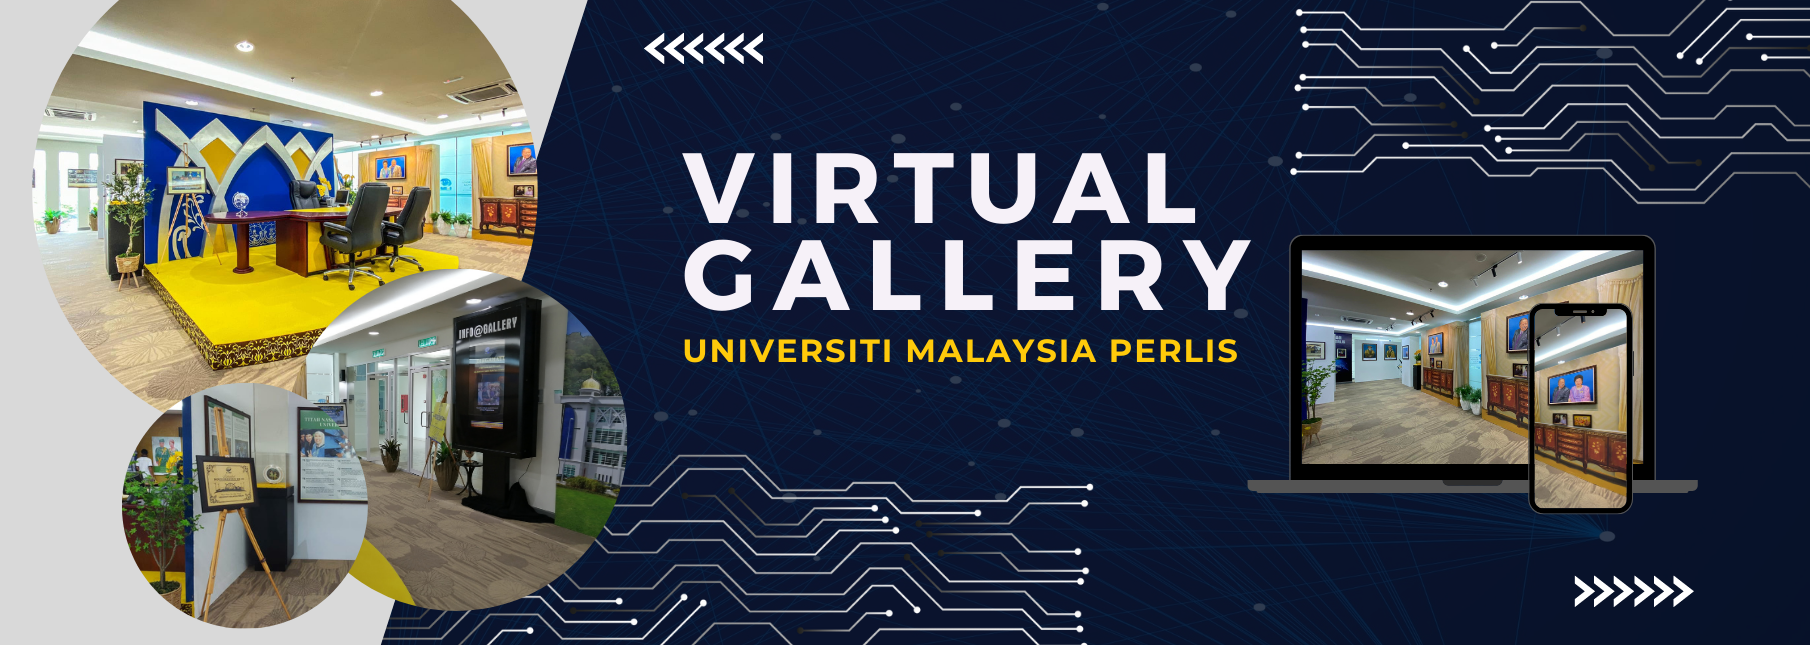 Virtual Gallery Universiti Malaysia Perlis